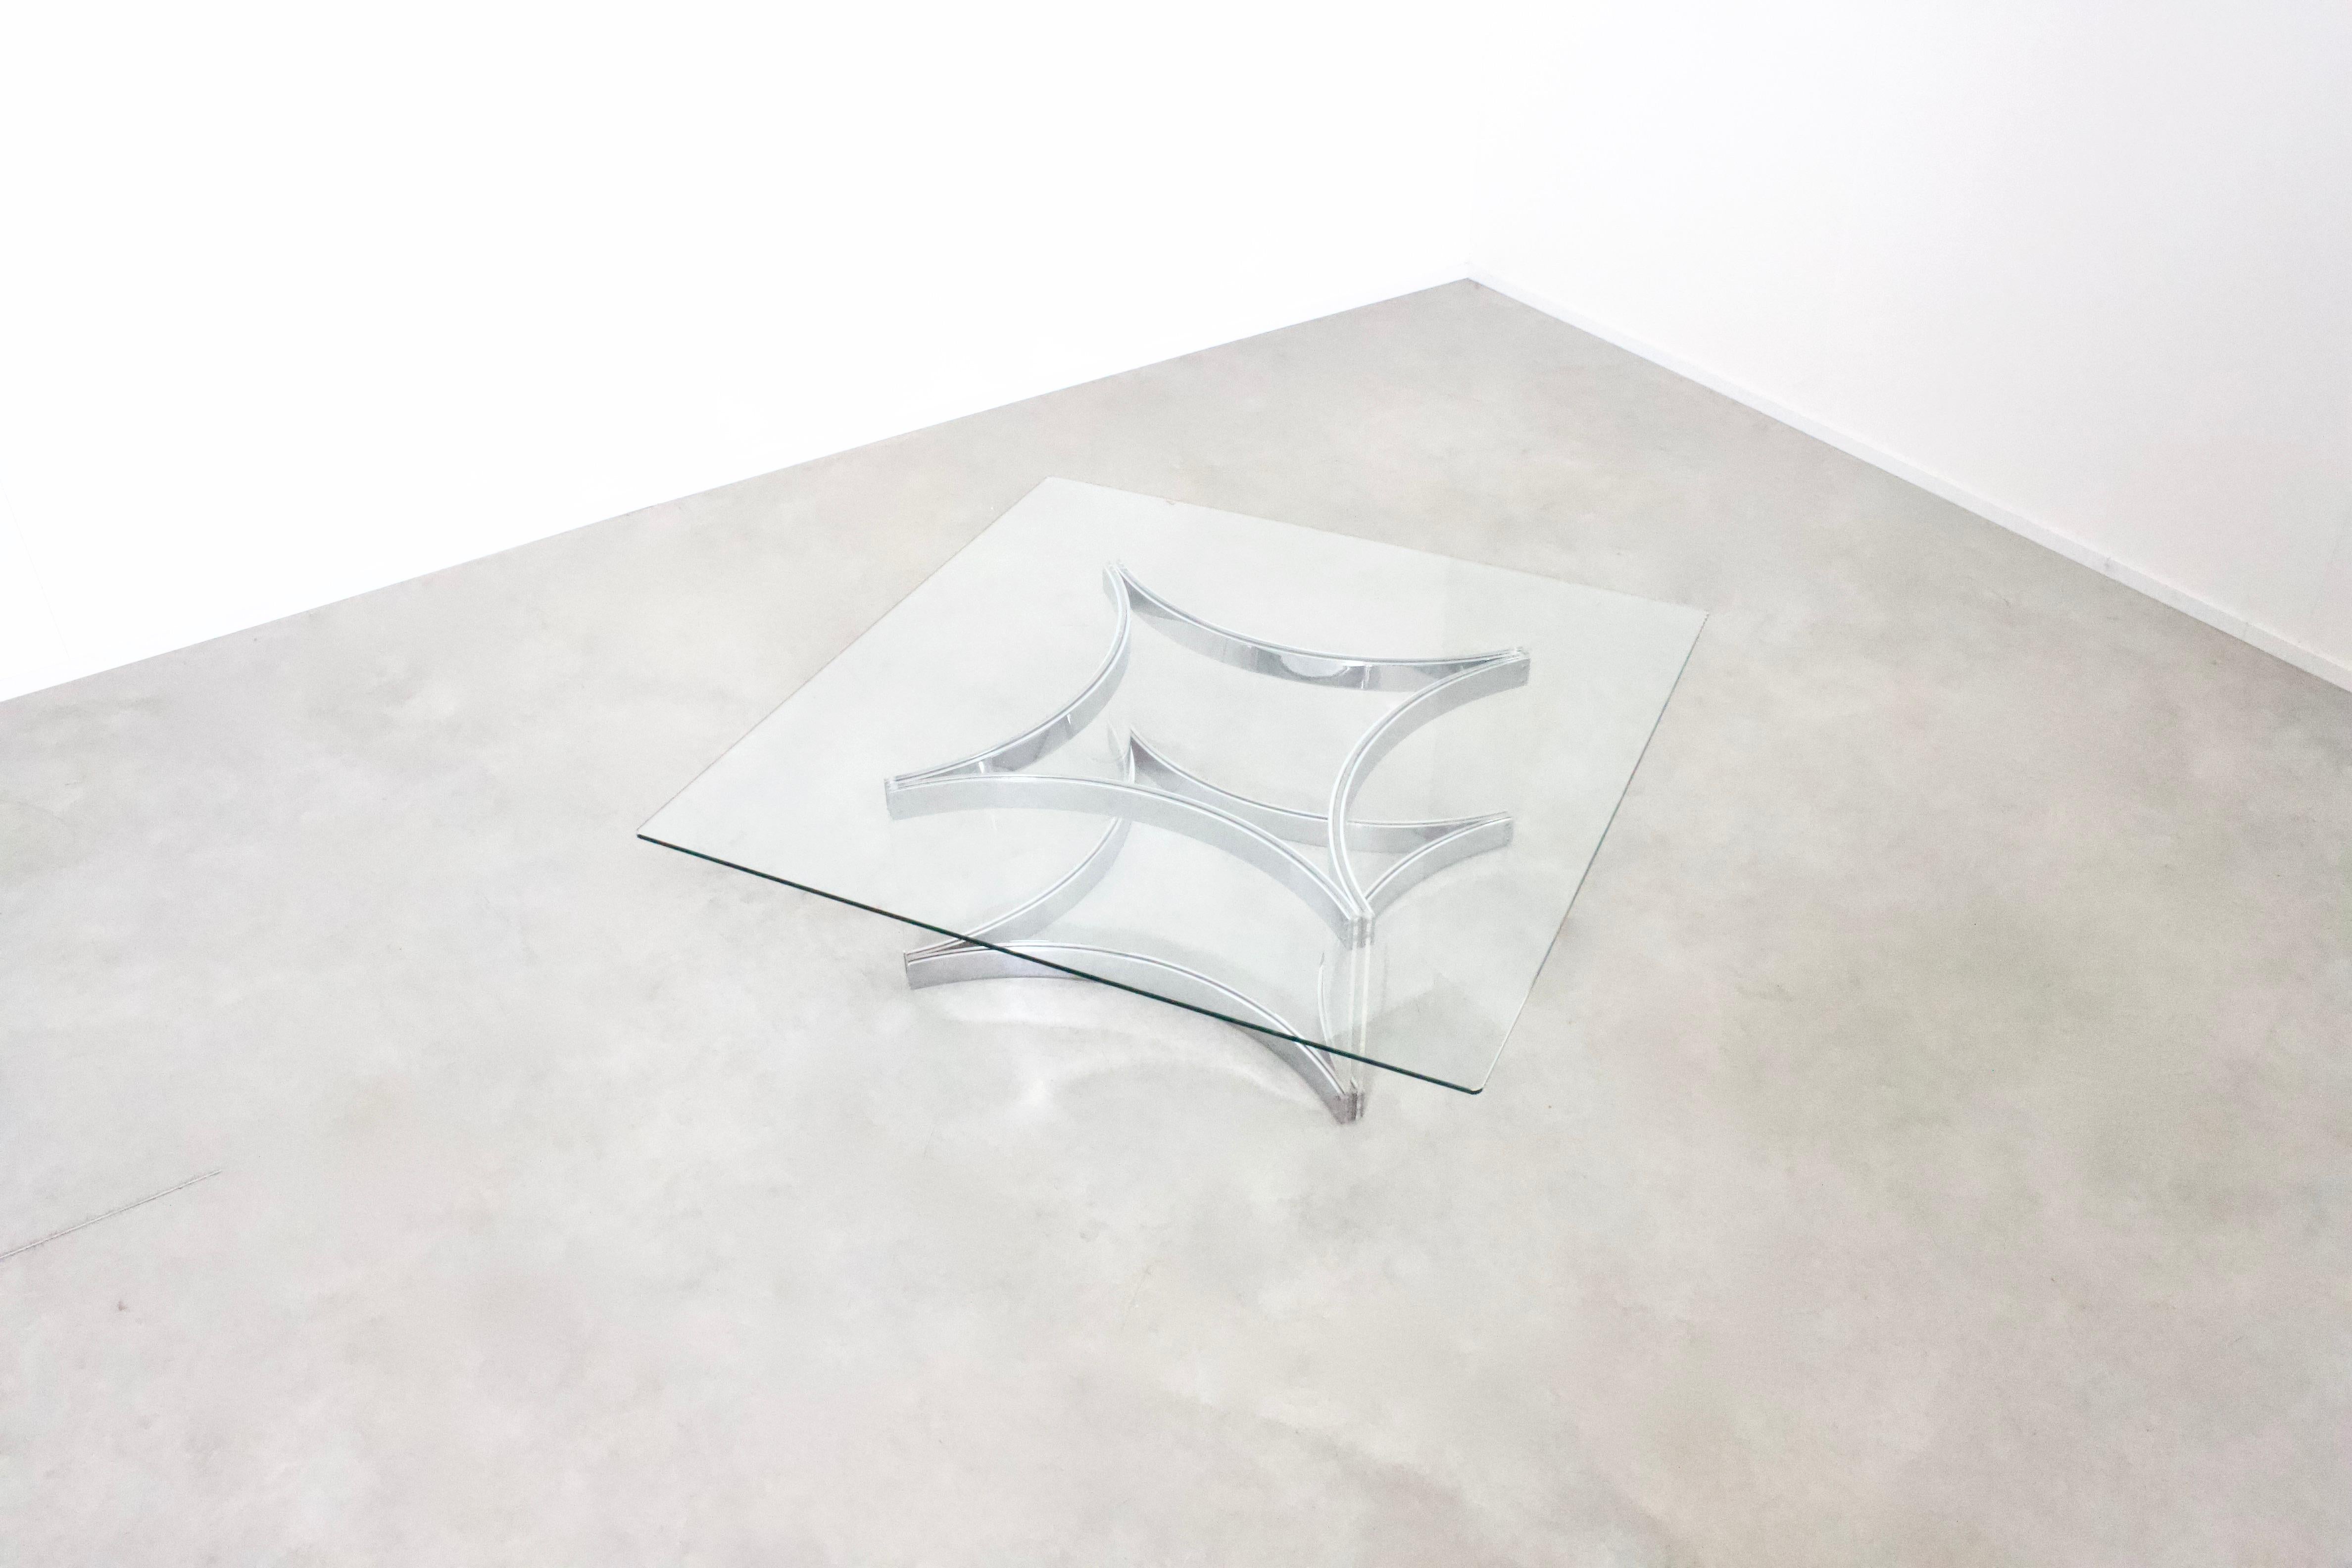 Superbe table basse d'Alessandro Albrizzi en très bon état.

La table a un plateau en verre carré.

La base est constituée de plaques de Lucite incurvées, serrées entre de lourds éléments métalliques chromés.

Les caractères gras de la signature